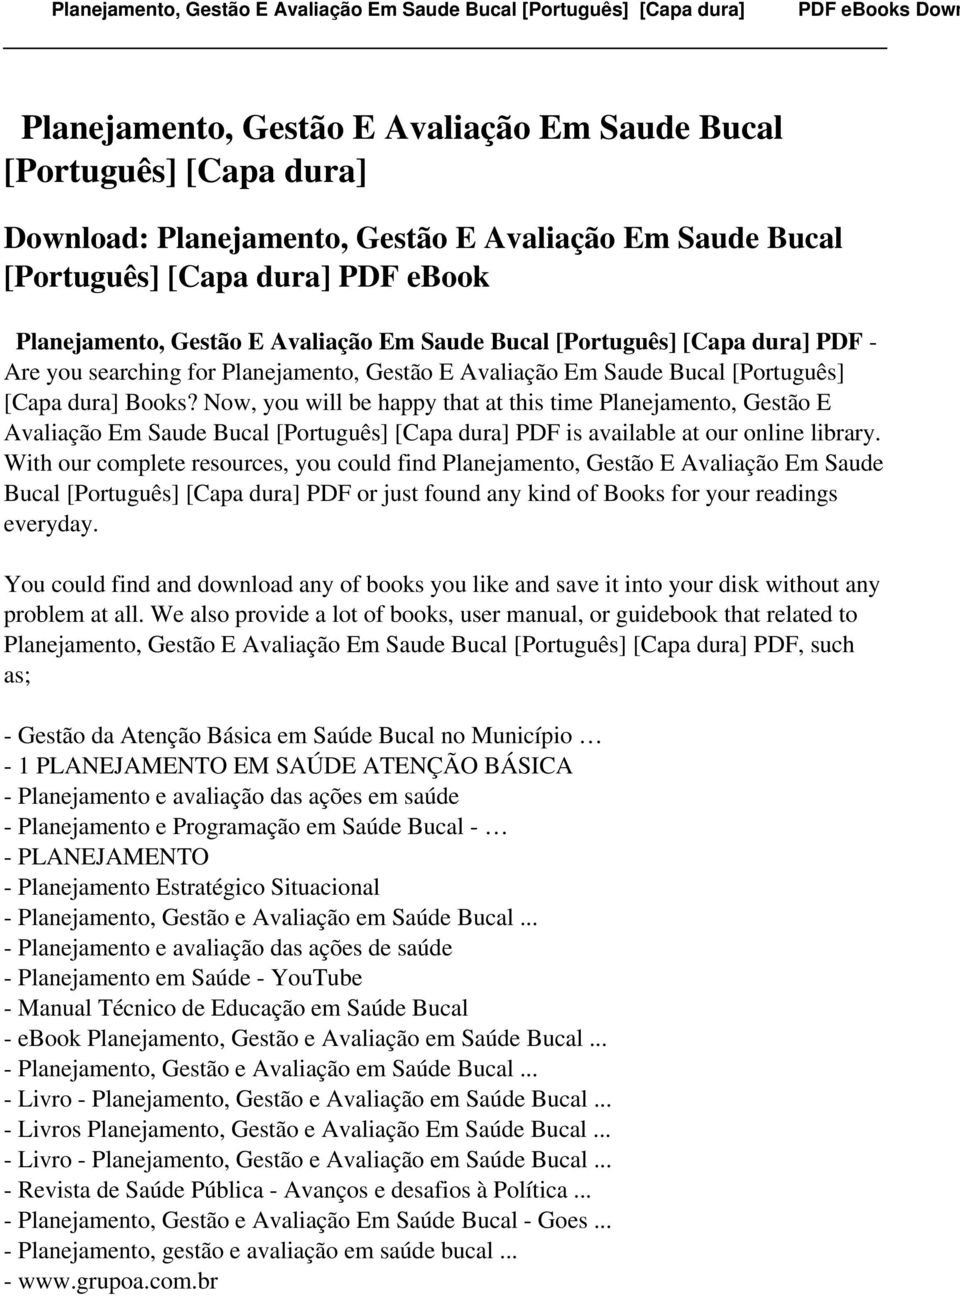 Now, you will be happy that at this time Planejamento, Gestão E Avaliação Em Saude Bucal [Português] [Capa dura] PDF is available at our online library.